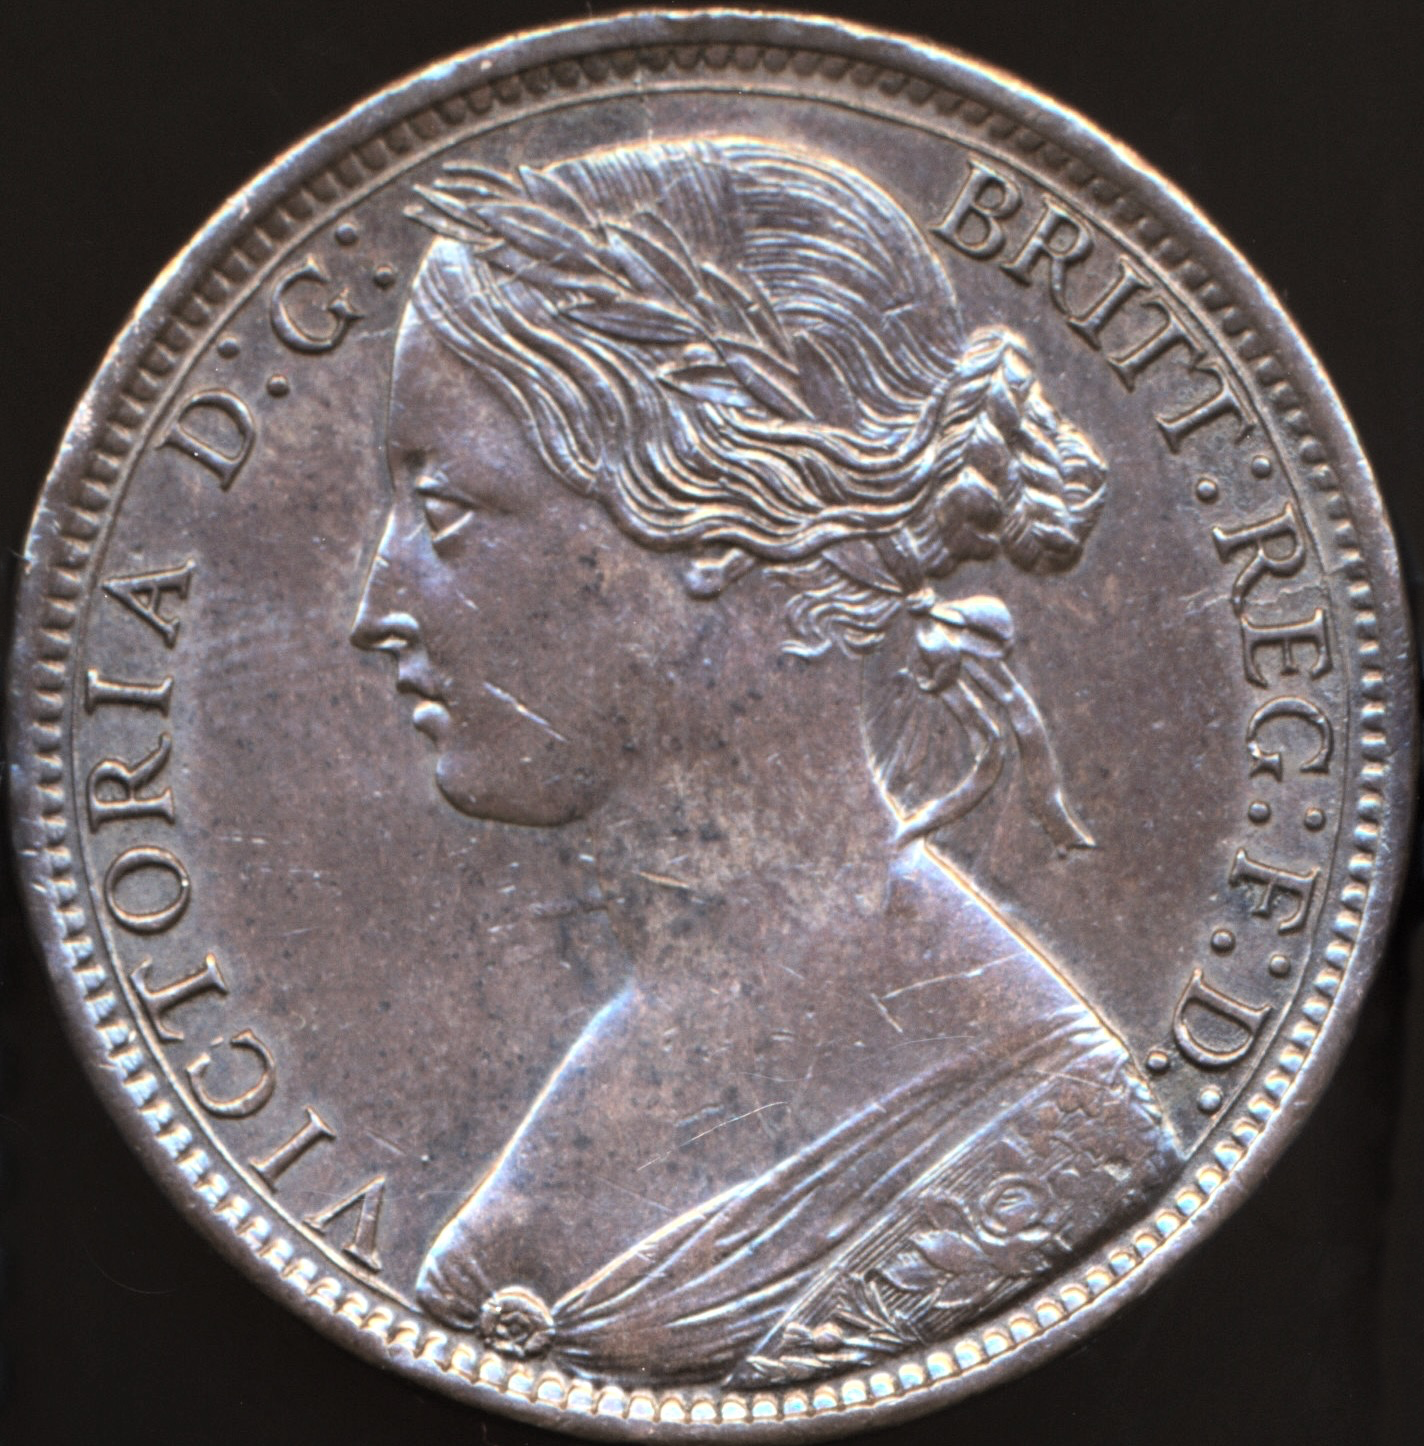 1866 Penny F52 GEF